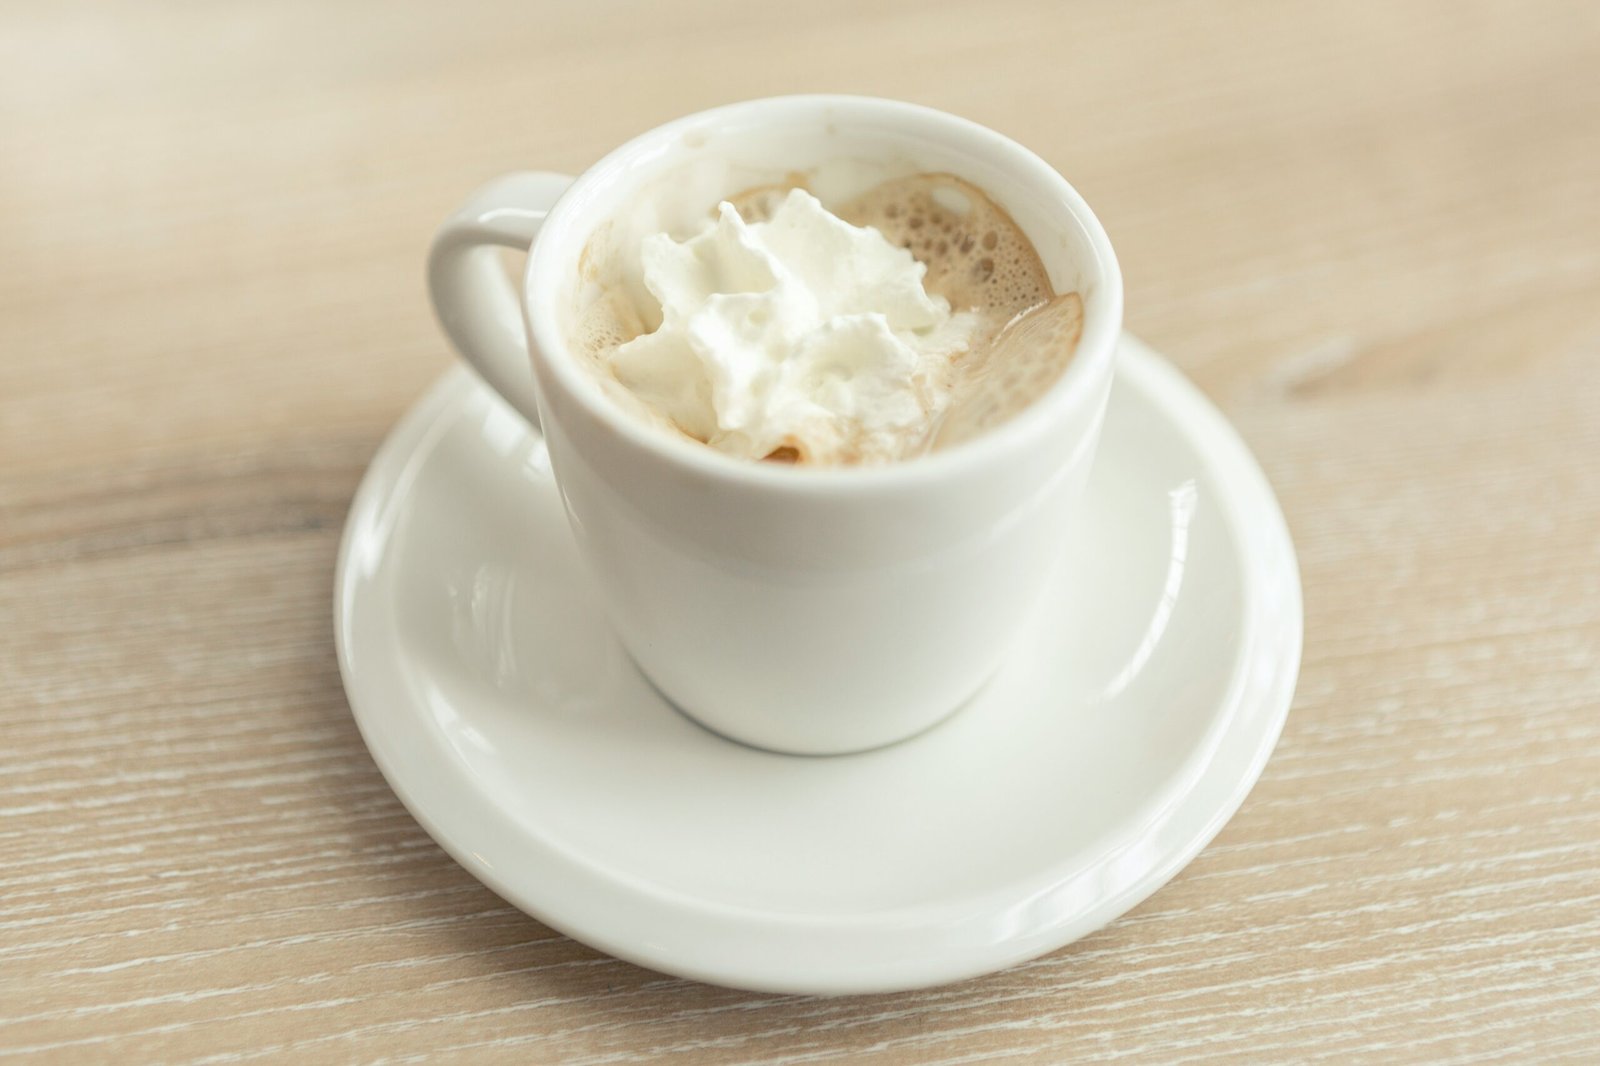 Entdecken Sie den perfekten Milchaufschäumer für Ihre Kaffeebedürfnisse und genießen Sie köstliche, schaumige Getränke zu Hause mit unserer Auswahl an hochwertigen Milchaufschäumern.